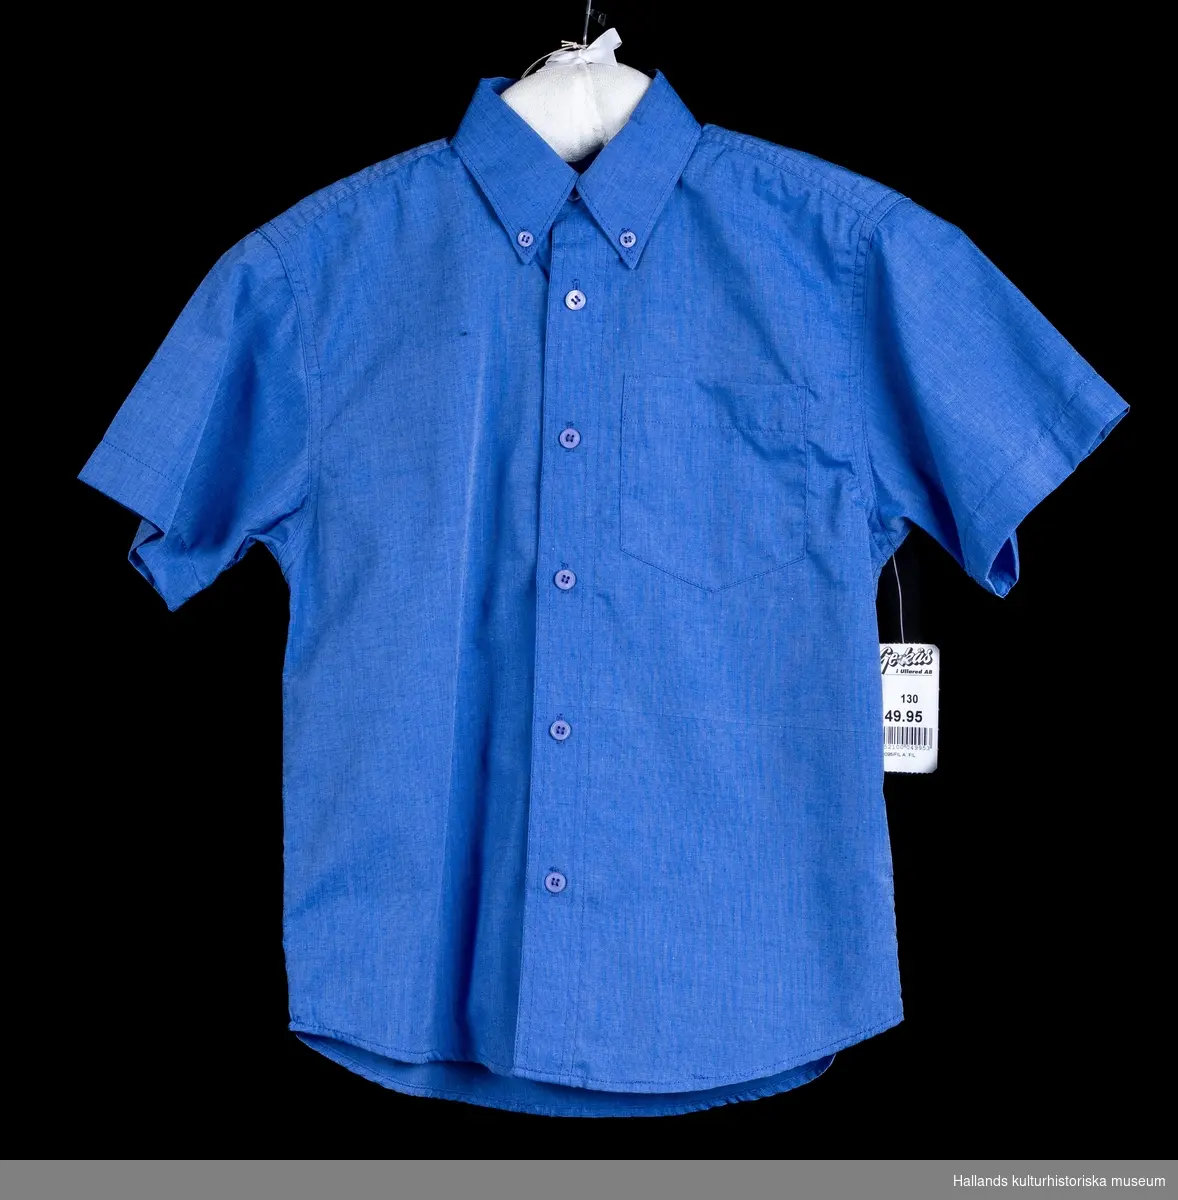 Kortärmad, klarblå skjorta med krage och en bröstficka. Knäpps med 6 blå knappar och har två blå kragknappar. Märket i nacken är "TIGERS CREW CLASSIC", Storlek 130 och priset är 49.95 kr. enligt prislappen. Längd ärm:180 mm.  